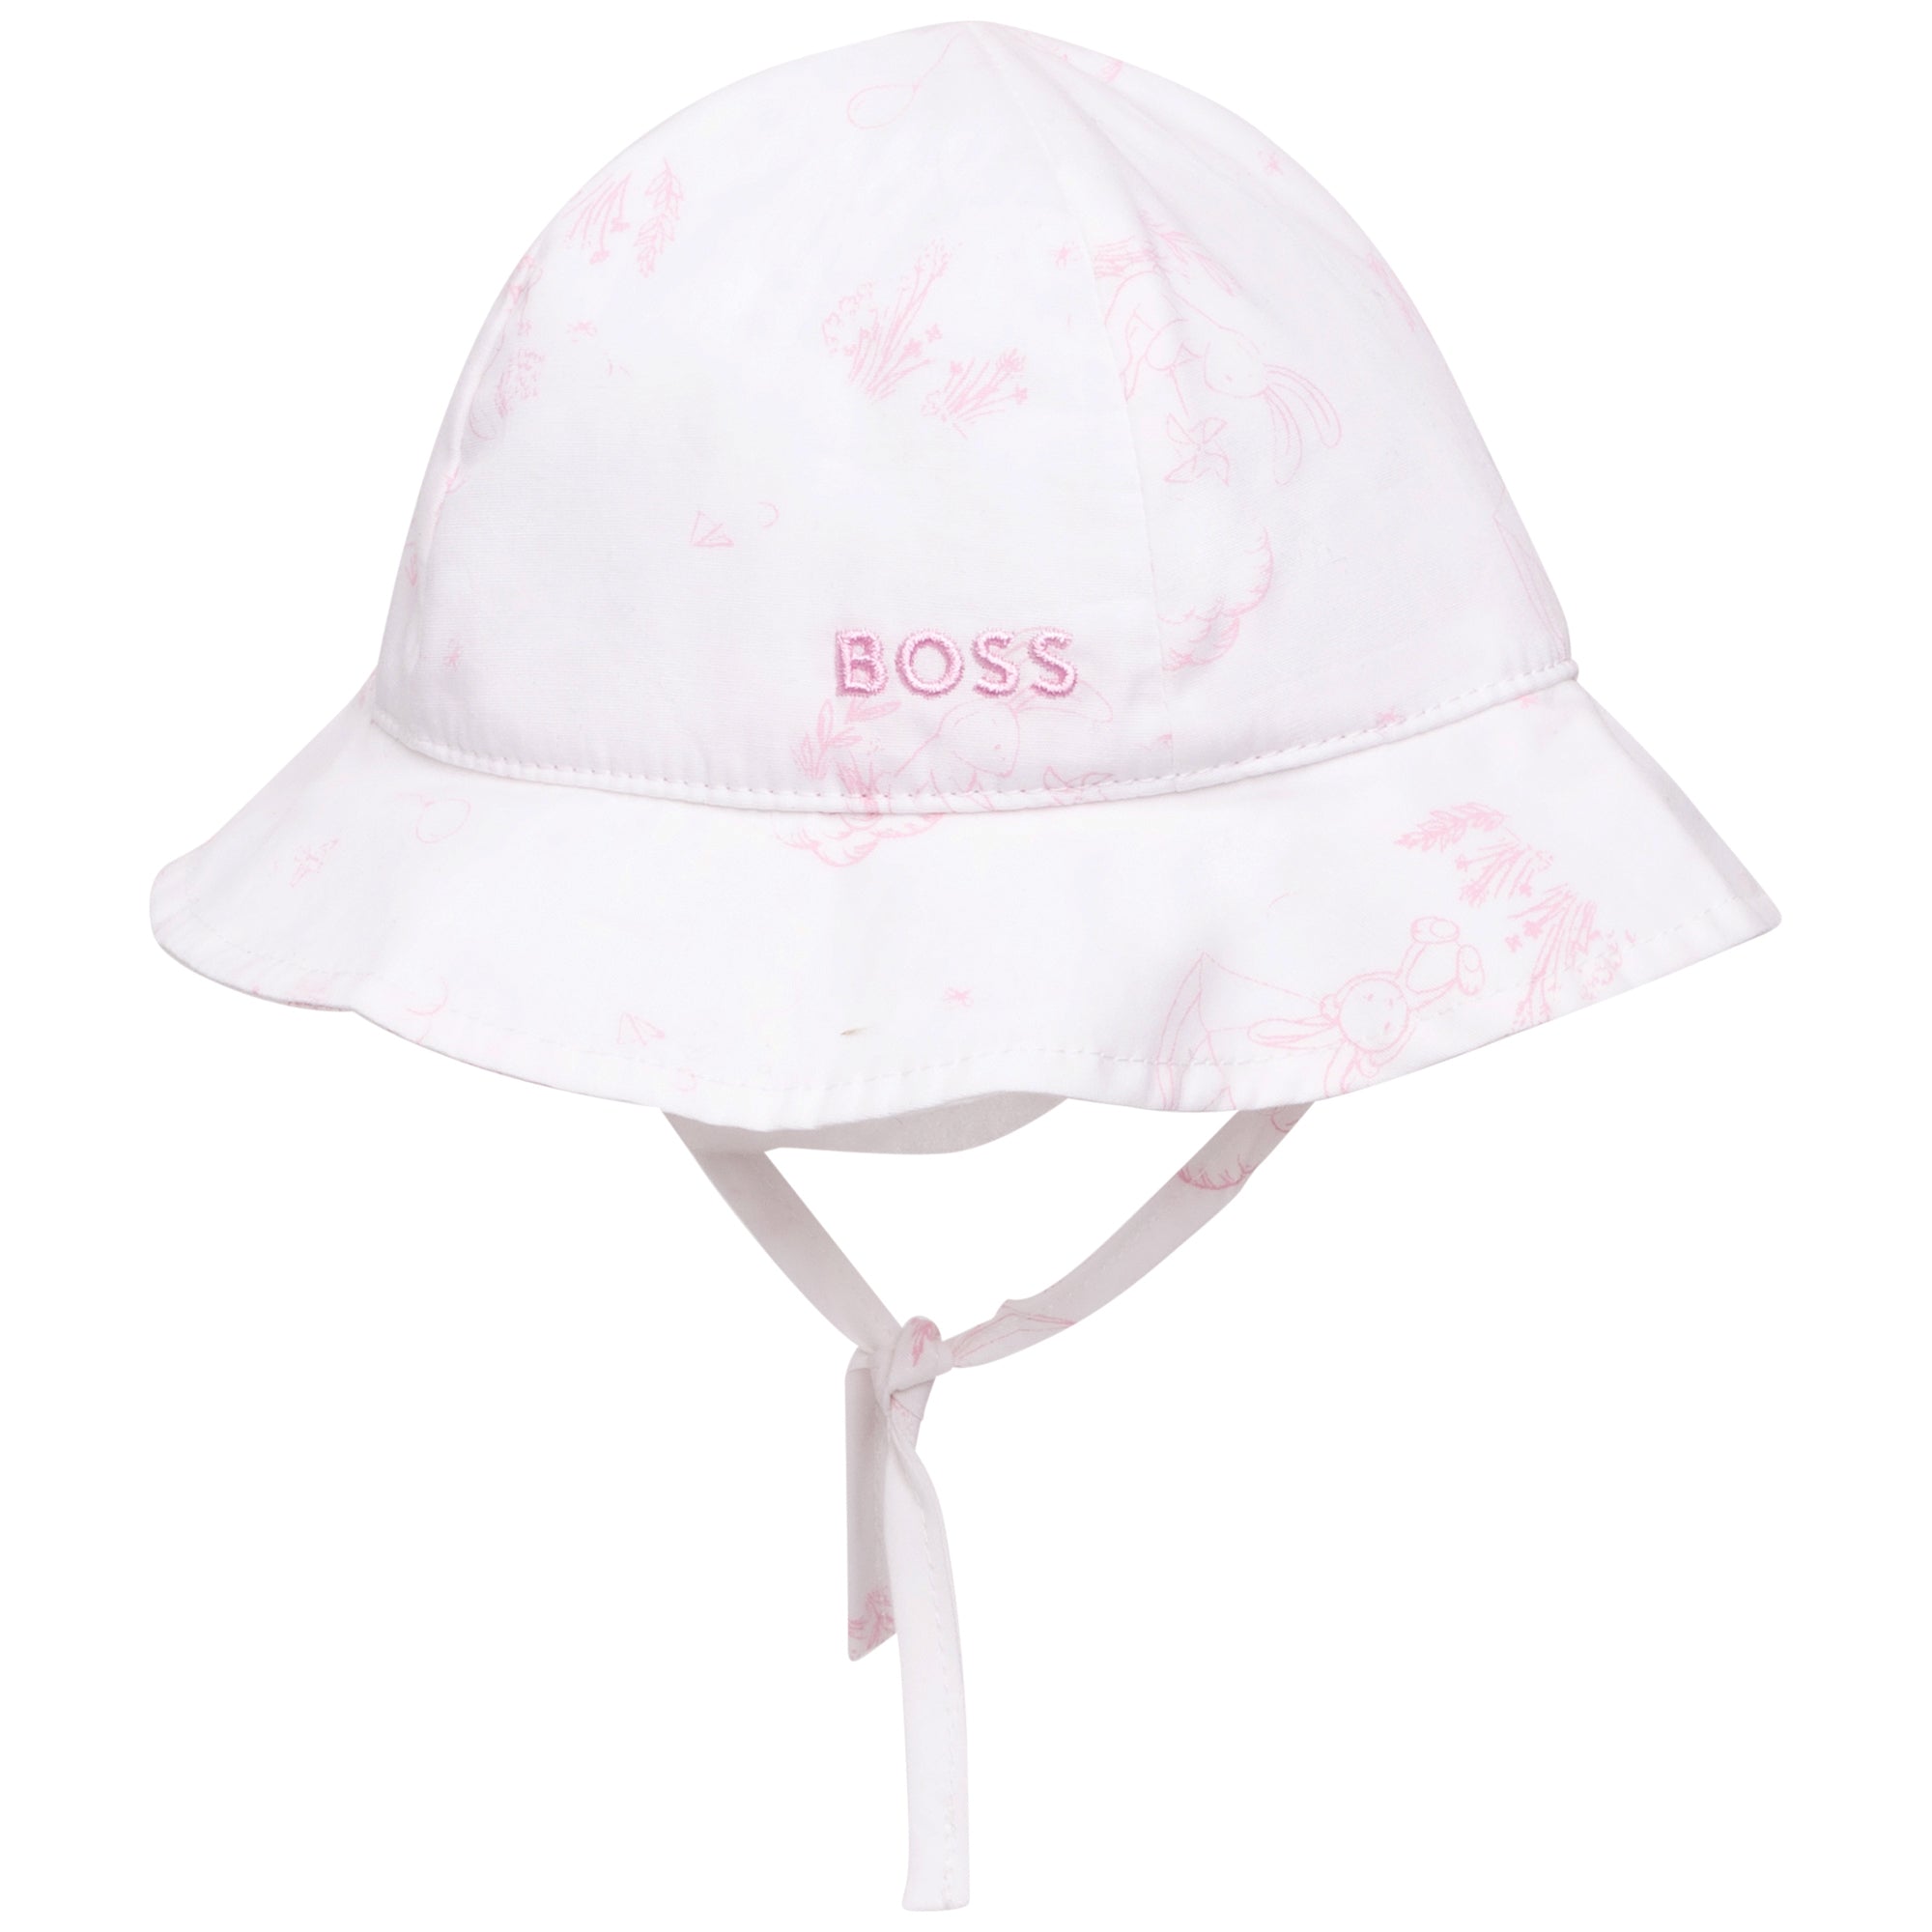 Hugo Boss Baby Girls White Hat